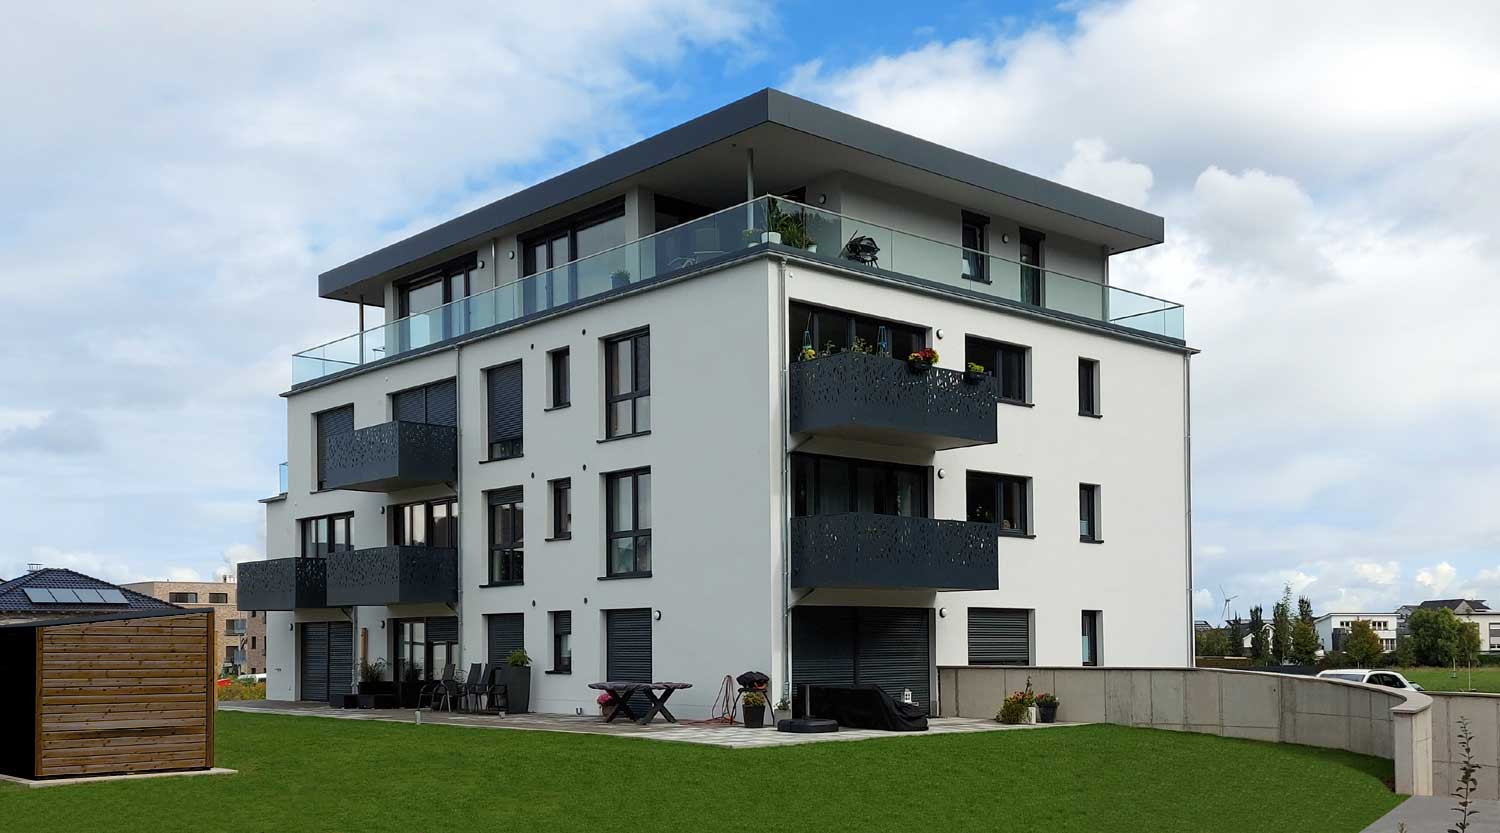 heiderich-architekten-luenen-mehrfamilienhaus-dortmund-gartenseite